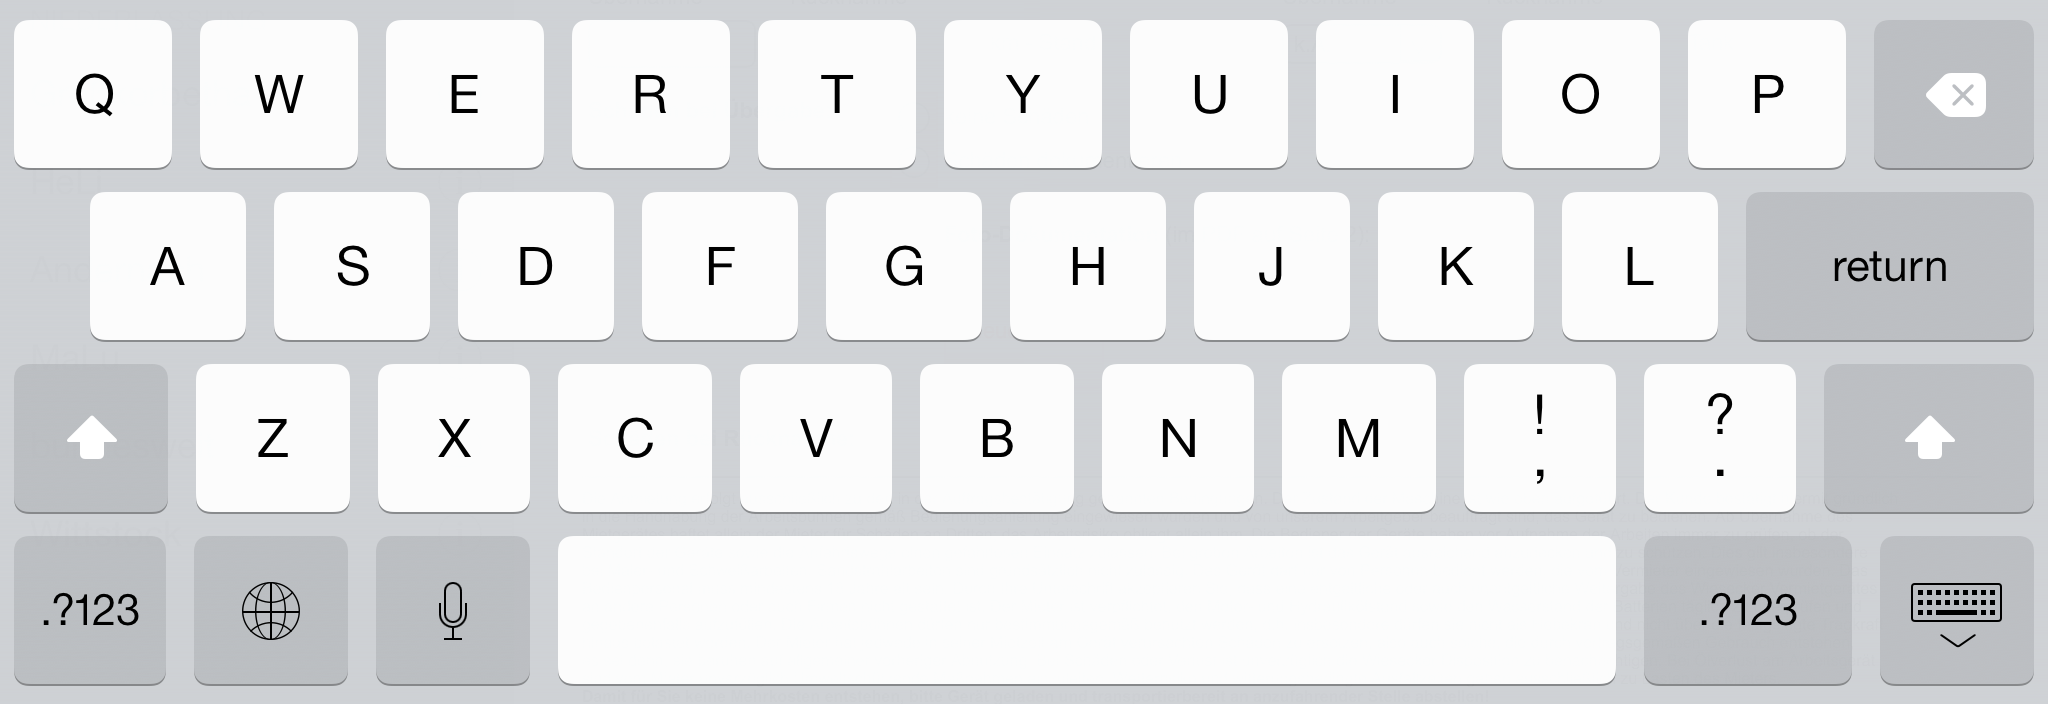 iOS 7.1 screenshot of keyboard